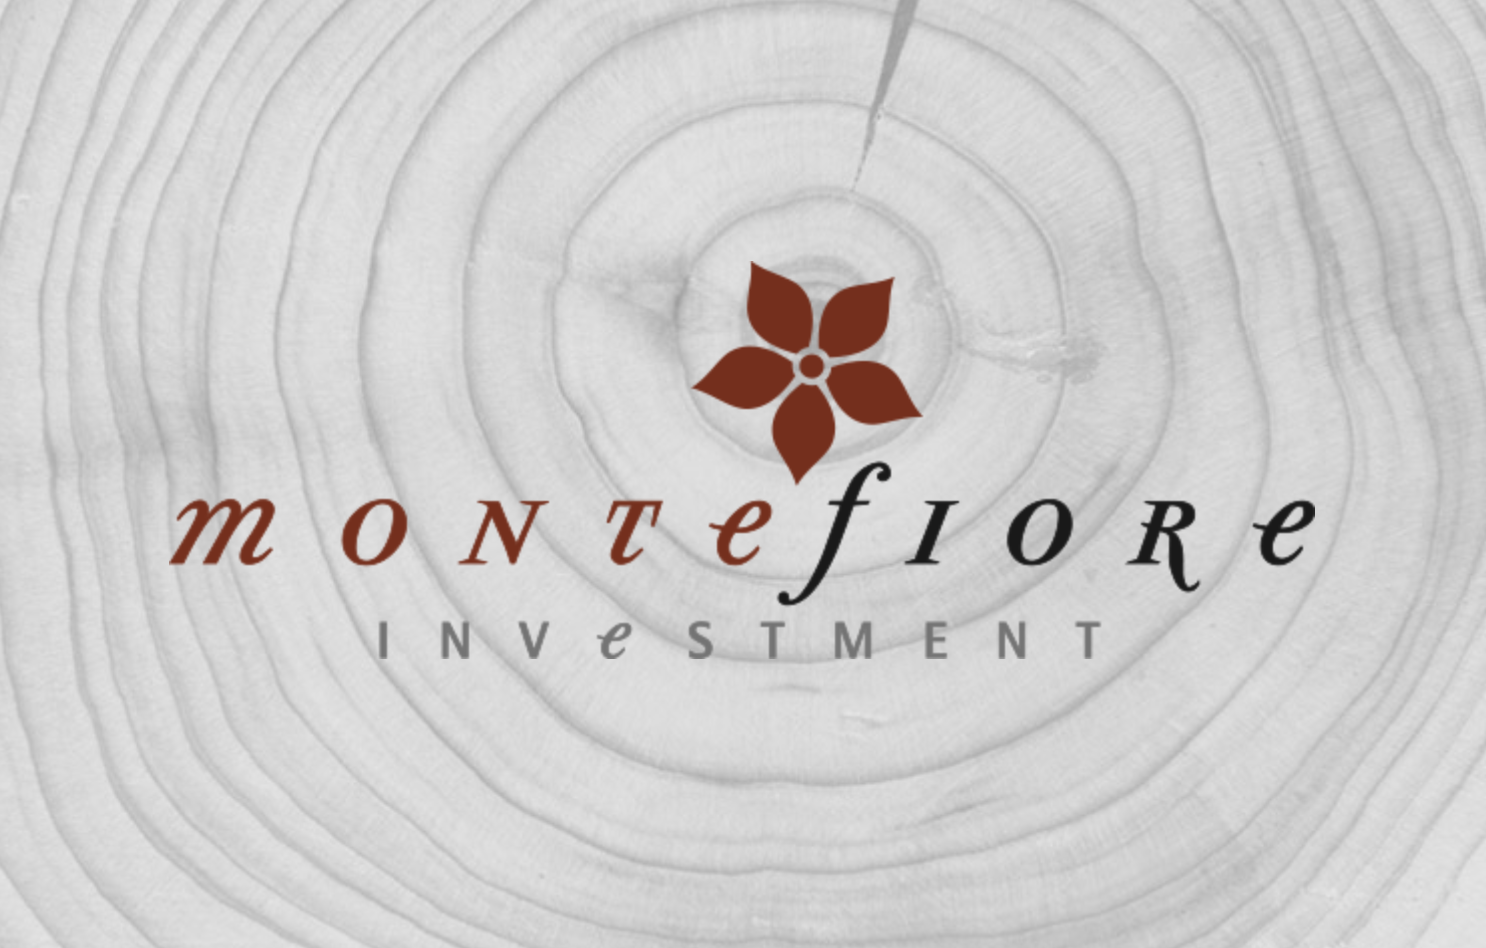 Montefiore Investment annonce le closing intermédiaire de deux nouveaux fonds, à hauteur de 1,4 milliard d'euros